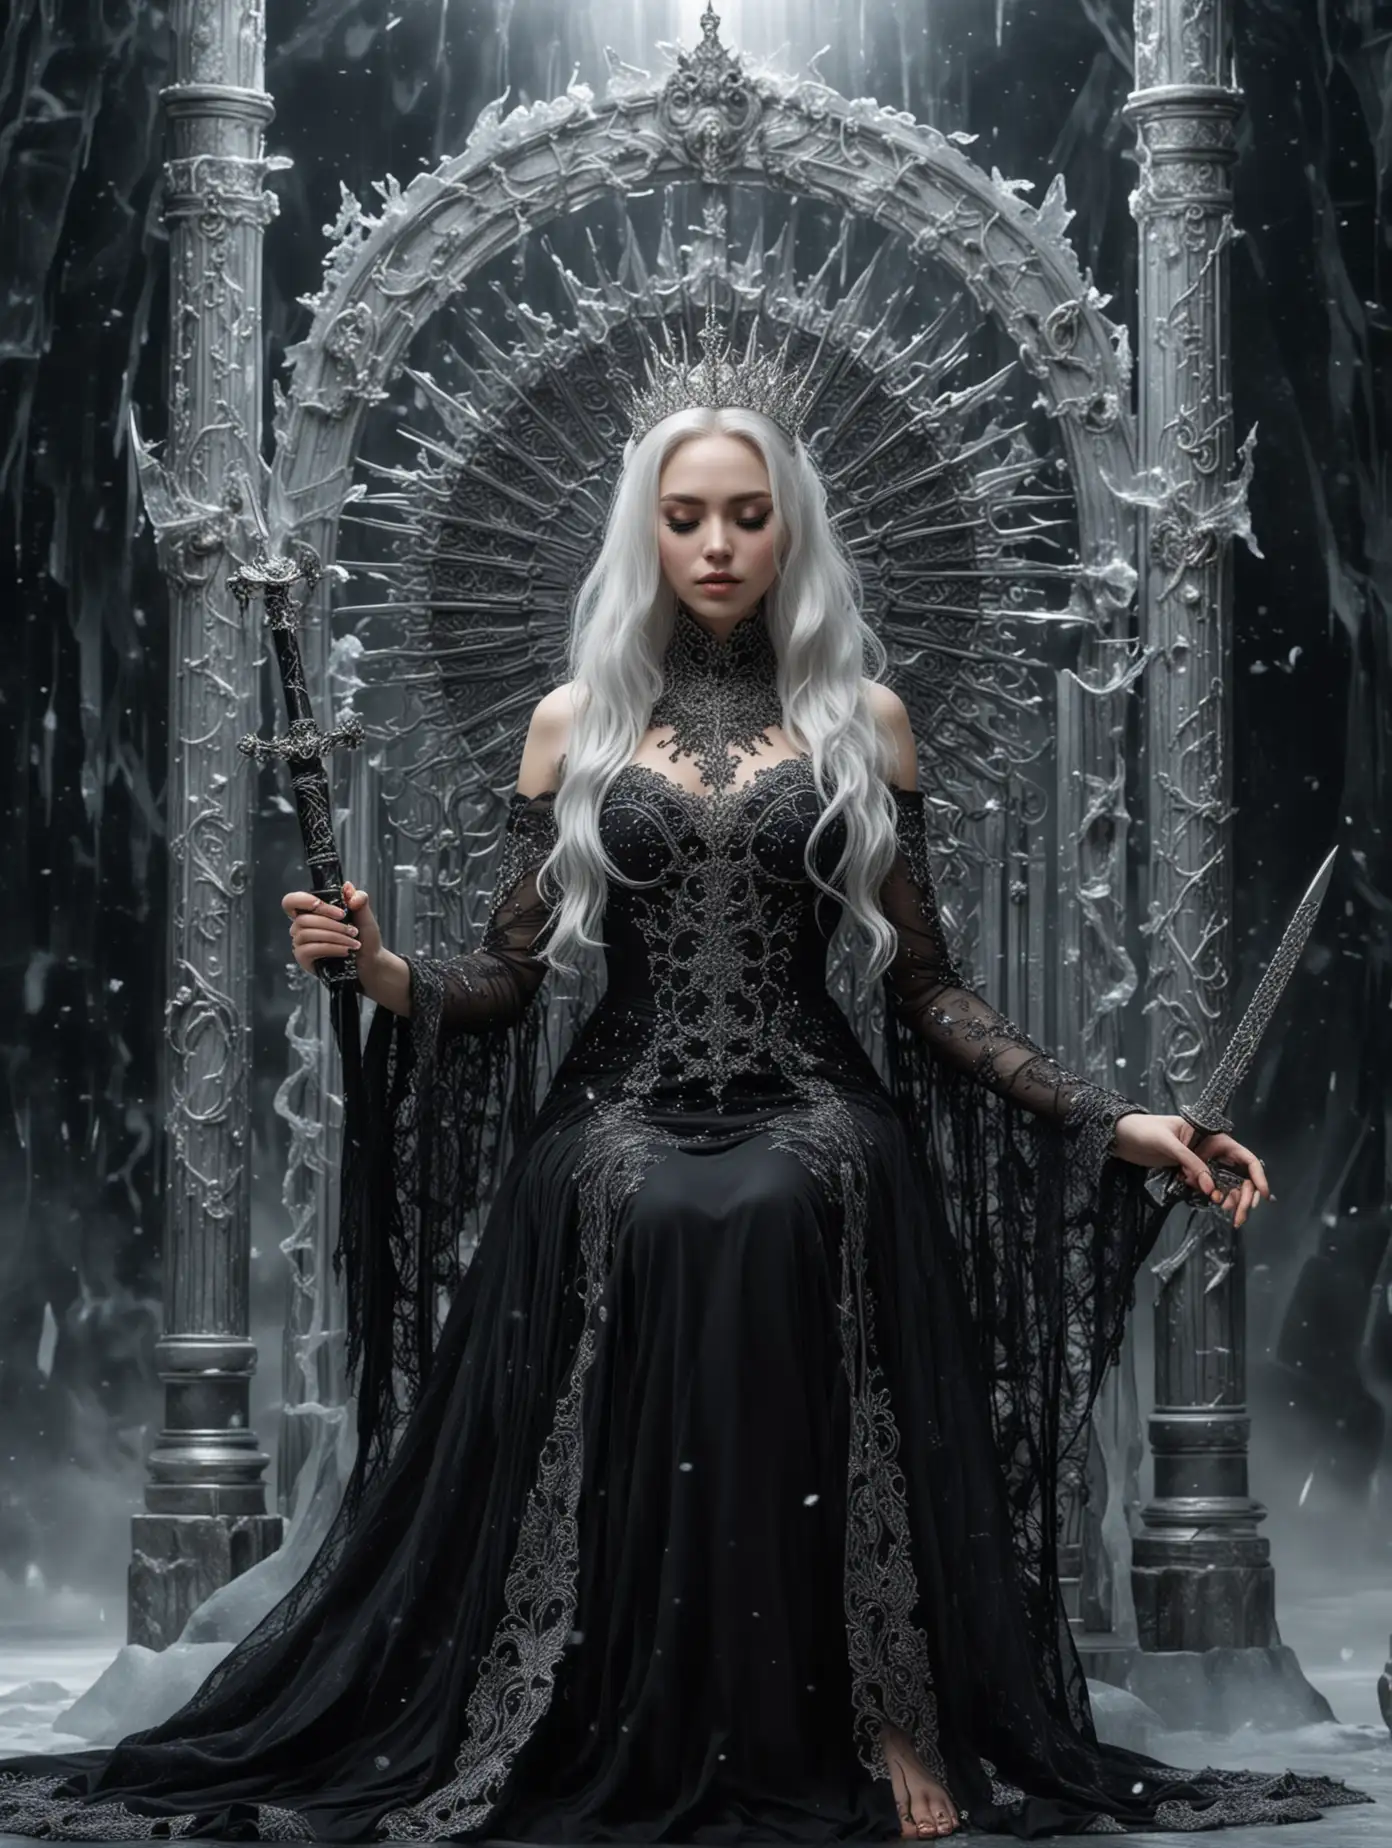 Космос, черная дыра, Богиня красивая женщина сидит на ледяном высоком троне. Длинное черное платье, в руке держит серебряный меч. Глаза закрыты. Лицо полностью закрыто черной ажурной маской. Белые волосы. На голове большая ледяная корона с лучами. Серебряные украшения.